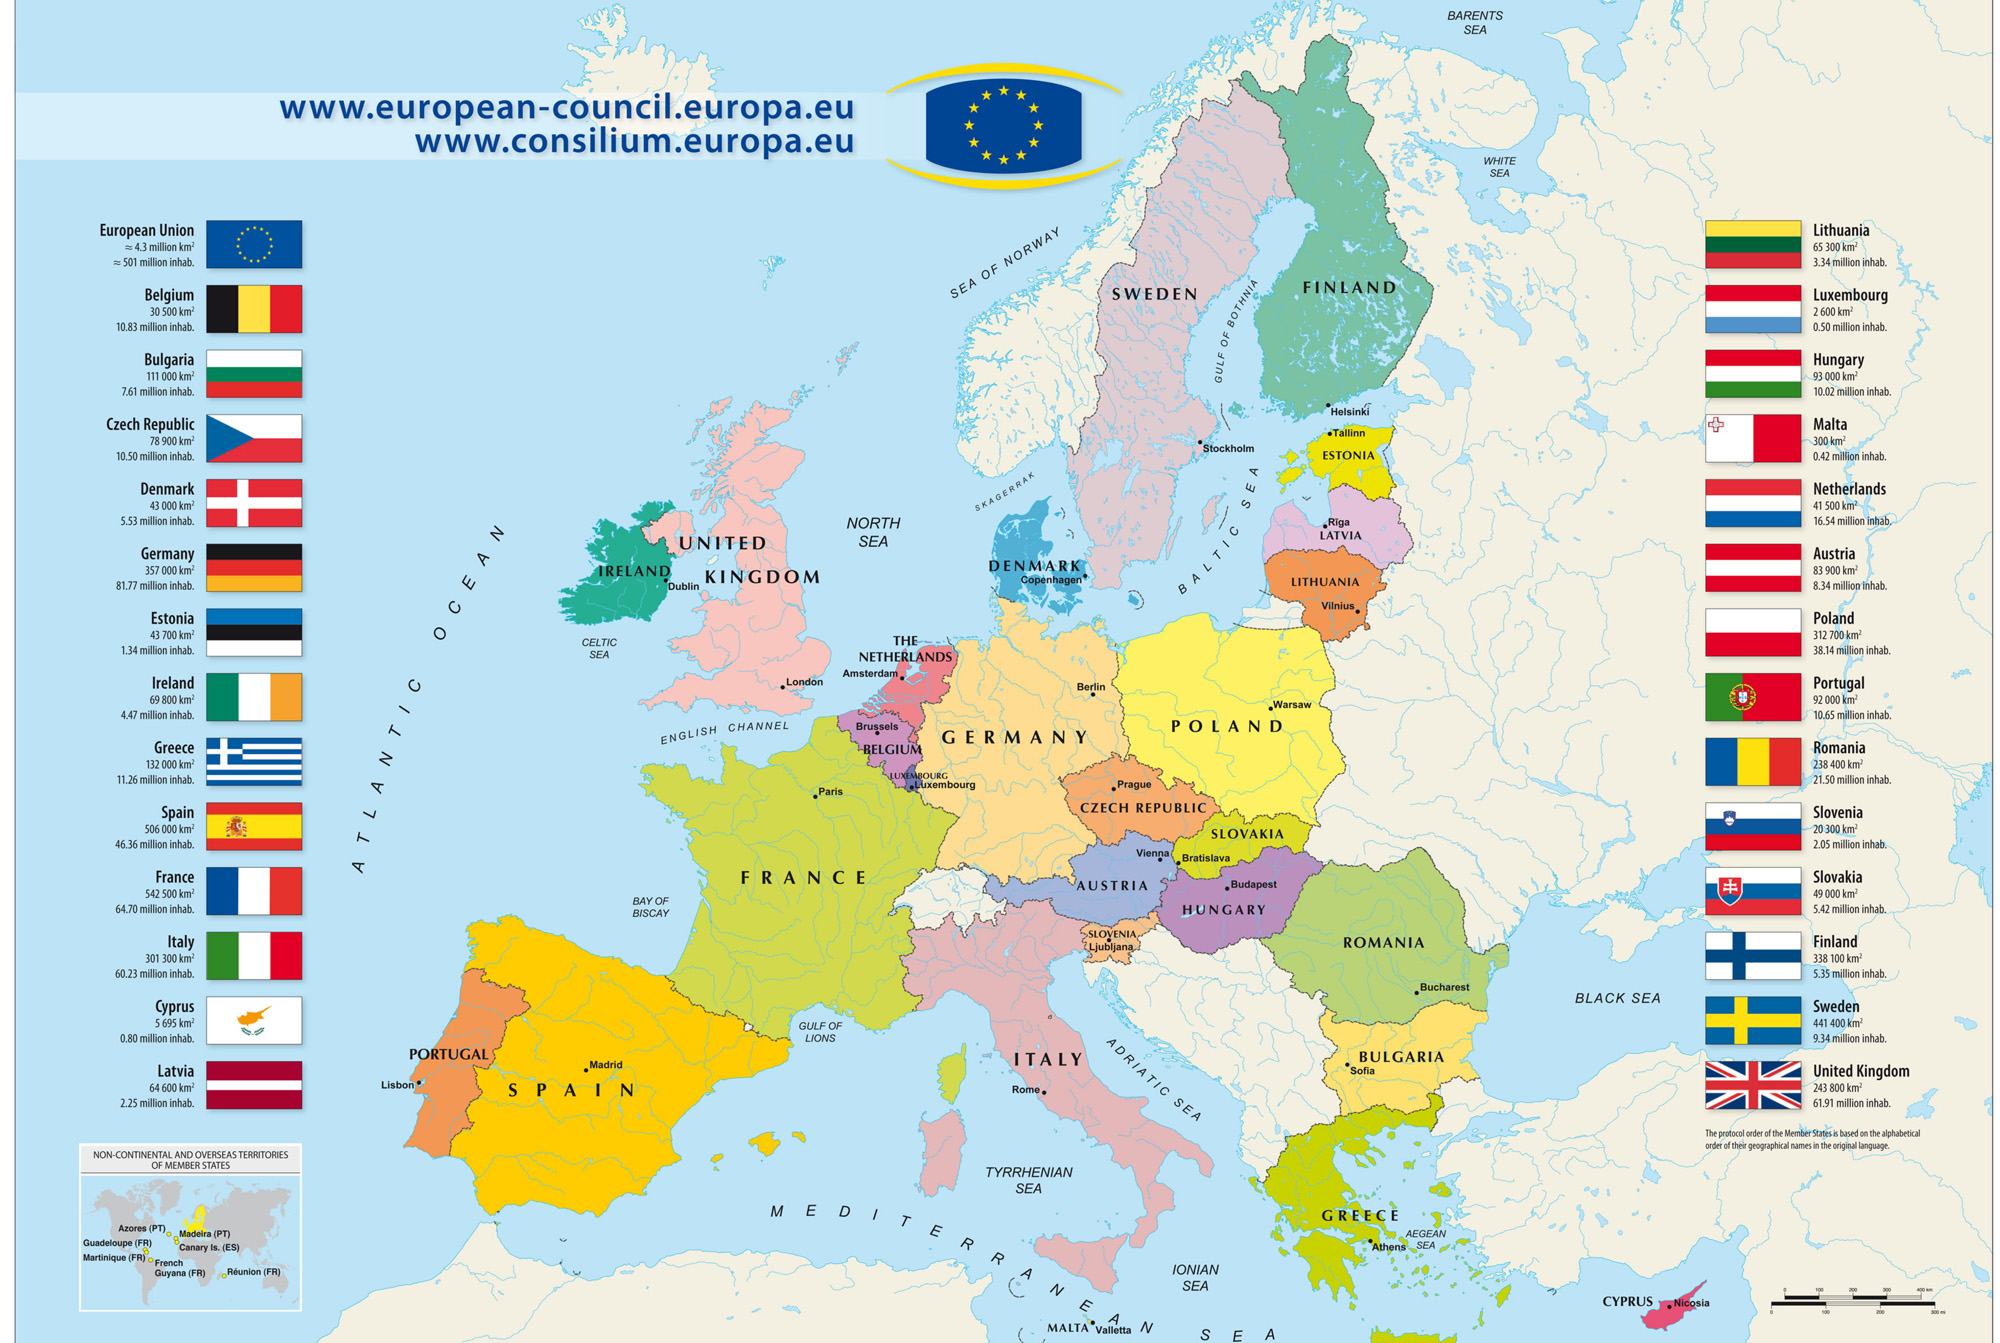 Năm 2024, bản đồ nước châu Âu sẽ cập nhật đầy đủ các thông tin về đất nước, thành phố, vùng đất và tâm điểm du lịch mới được khai thác. Xem bản đồ để lập kế hoạch du lịch tuyệt vời tại châu Âu và khám phá những điểm đến mới đầy hấp dẫn.